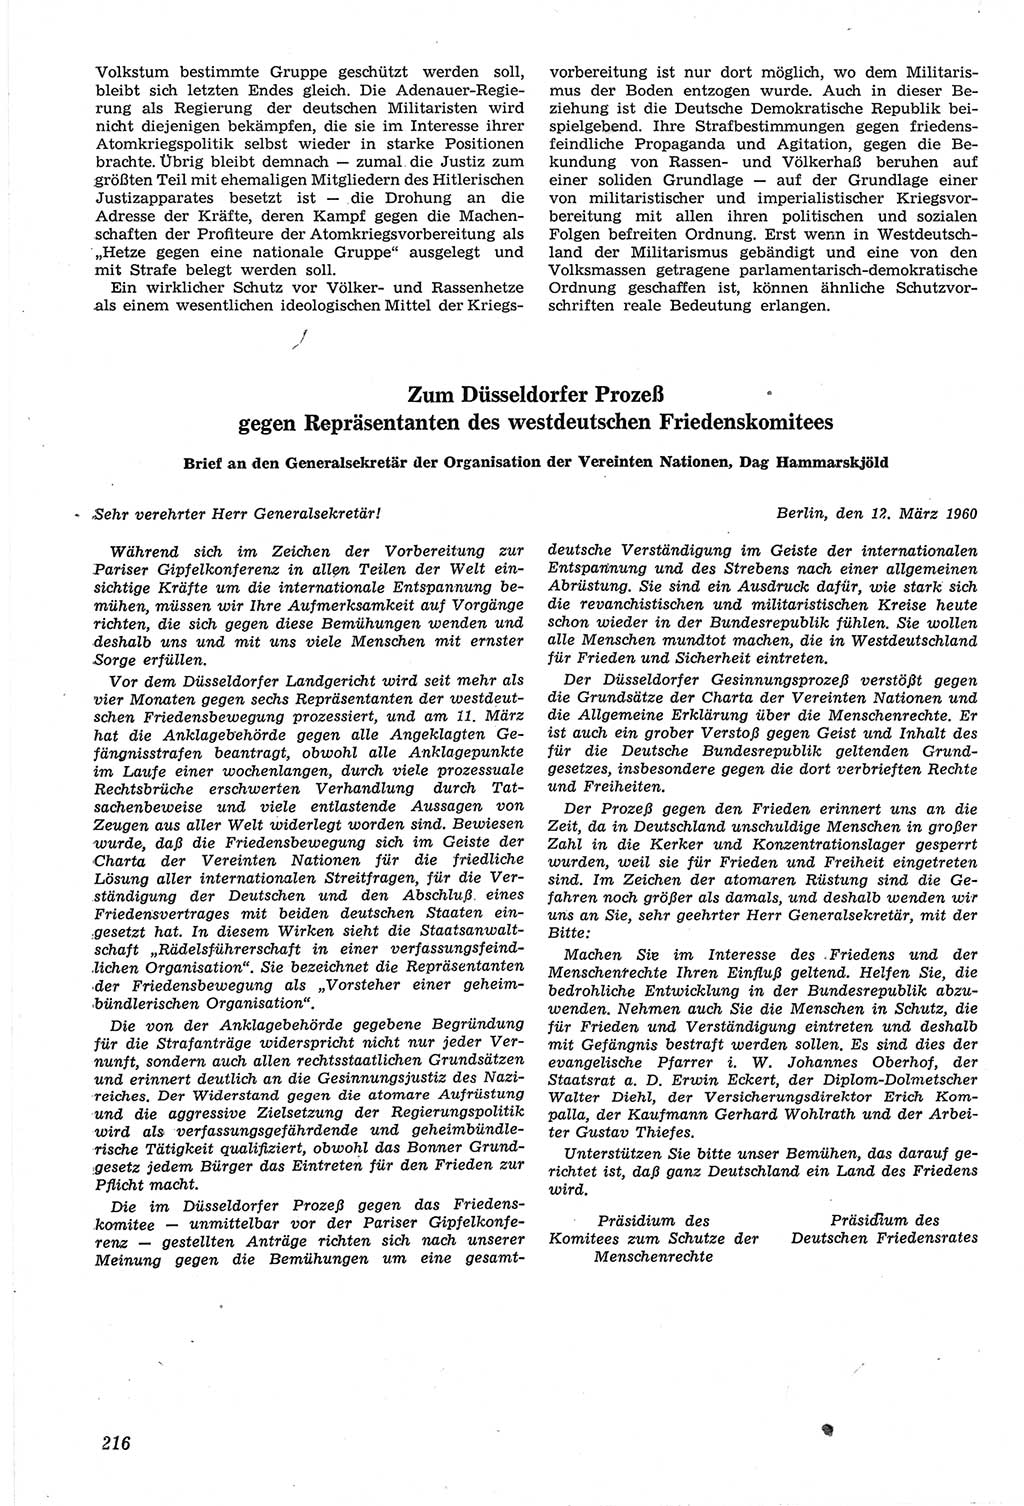 Neue Justiz (NJ), Zeitschrift für Recht und Rechtswissenschaft [Deutsche Demokratische Republik (DDR)], 14. Jahrgang 1960, Seite 216 (NJ DDR 1960, S. 216)